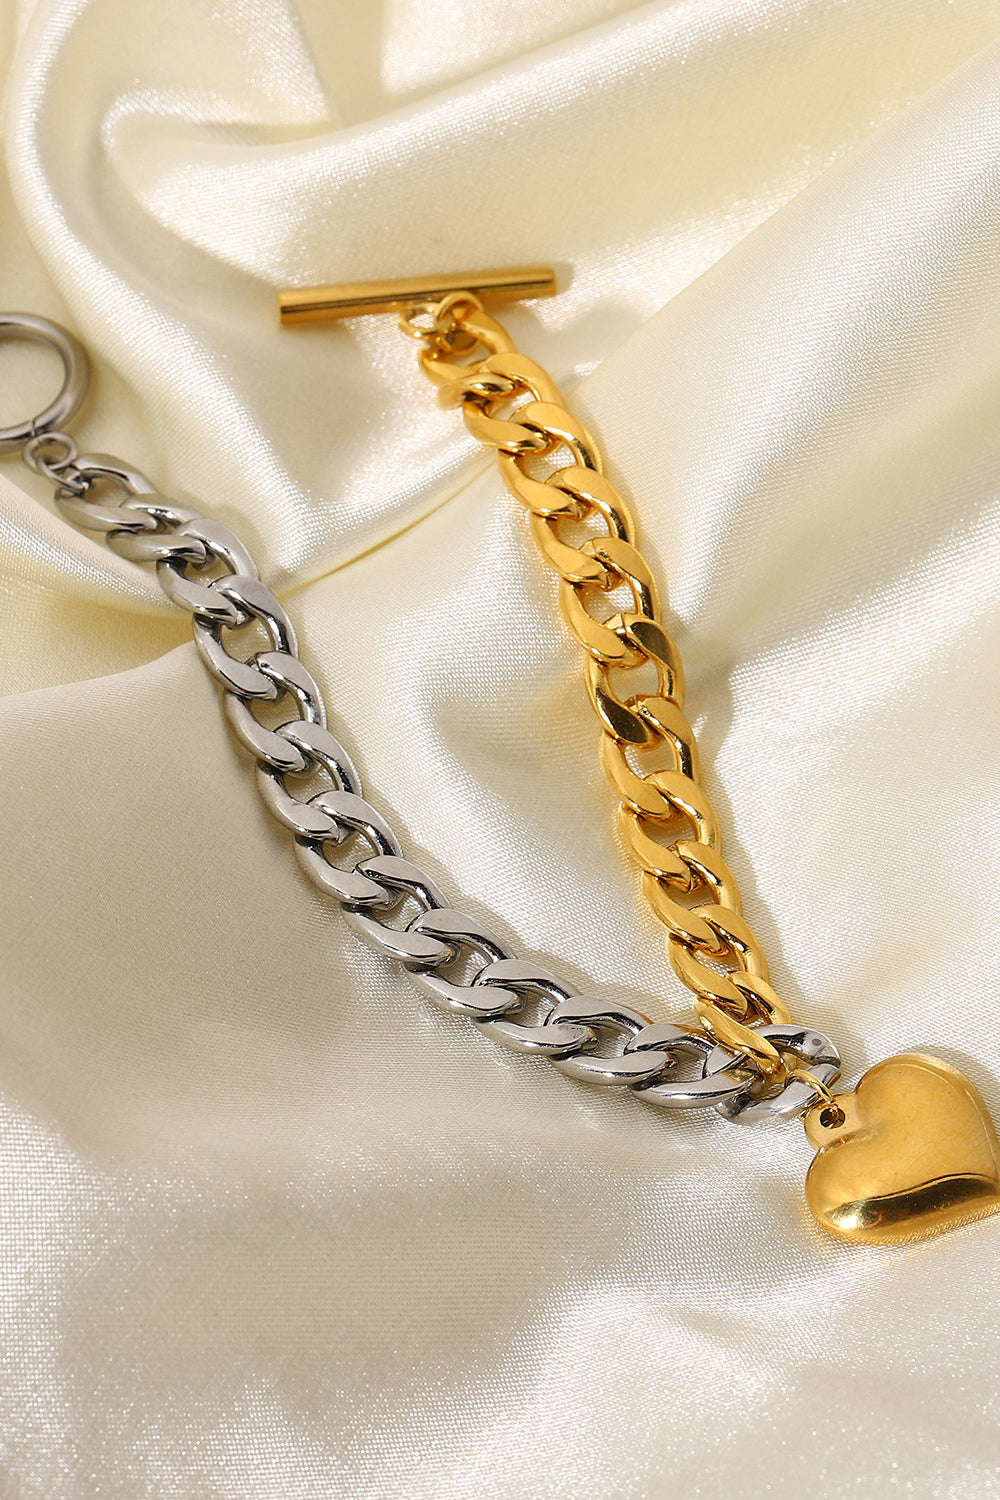 Chain Heart Charm Bracelet - Multicolored / One Size - Women’s Jewelry - Bracelets - 5 - 2024